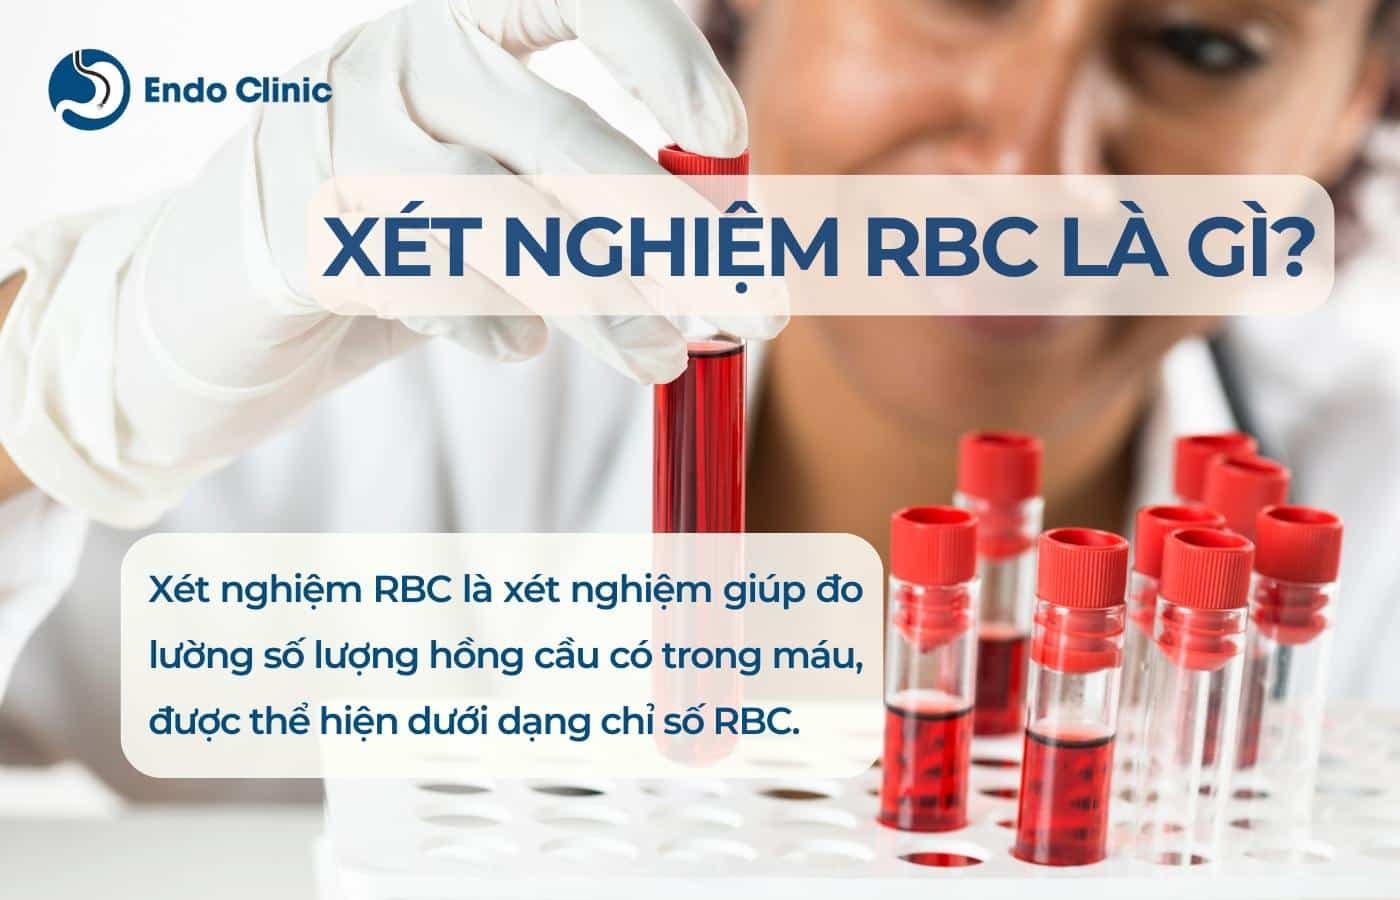 Xét nghiệm RBC trong máu là gì?